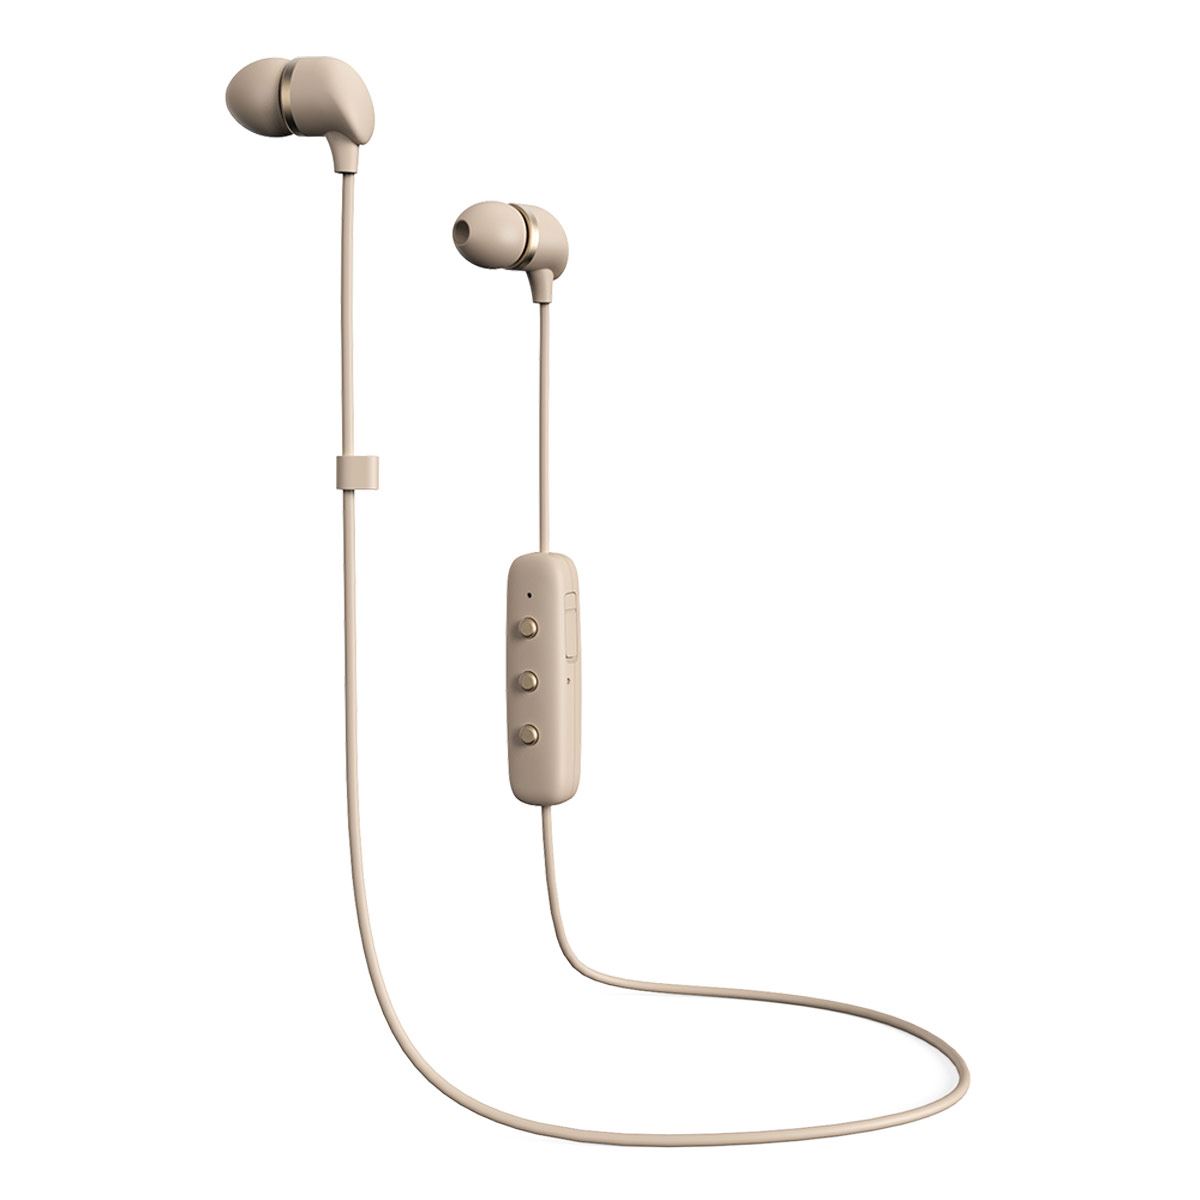 Audífonos Inalámbricos Bluetooth In-Ear Nude Happy Plugs